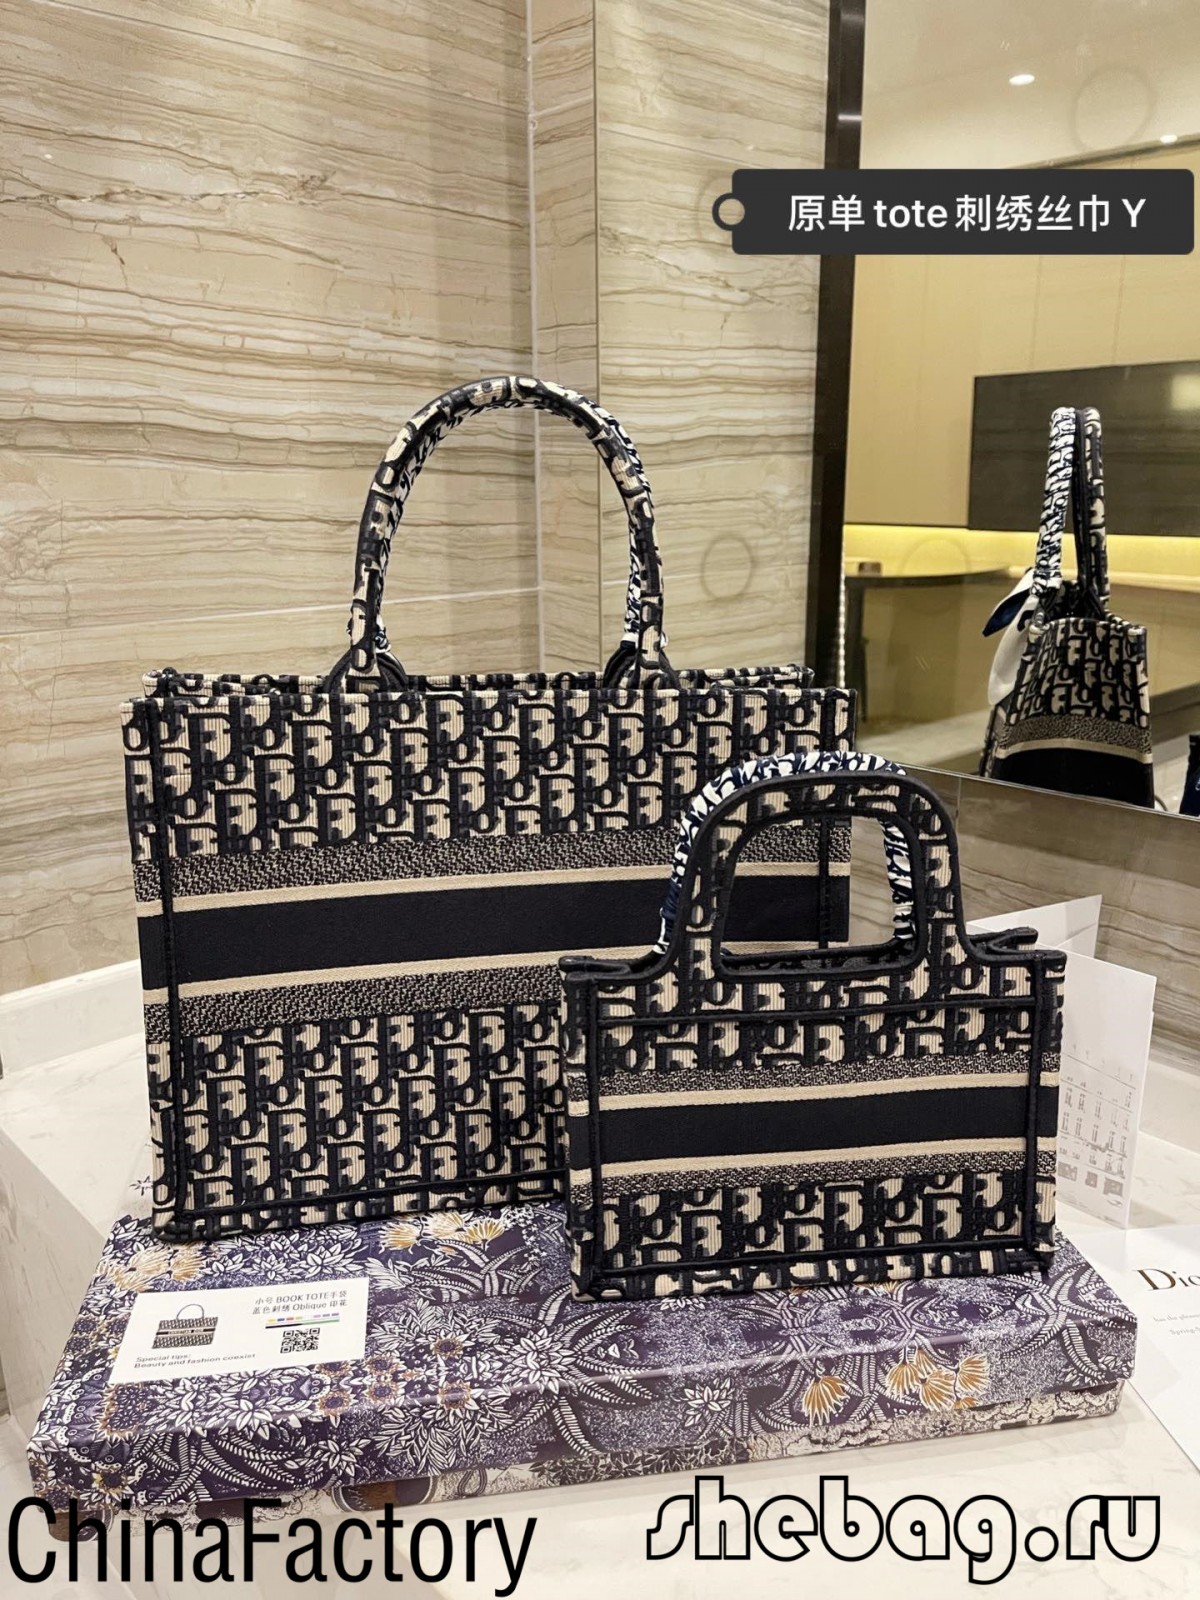 Dior könyves táska replika eladói értékelése (2022 legforróbb) - A legjobb minőségű hamis Louis Vuitton táska online áruház, tervezői replika táska ru